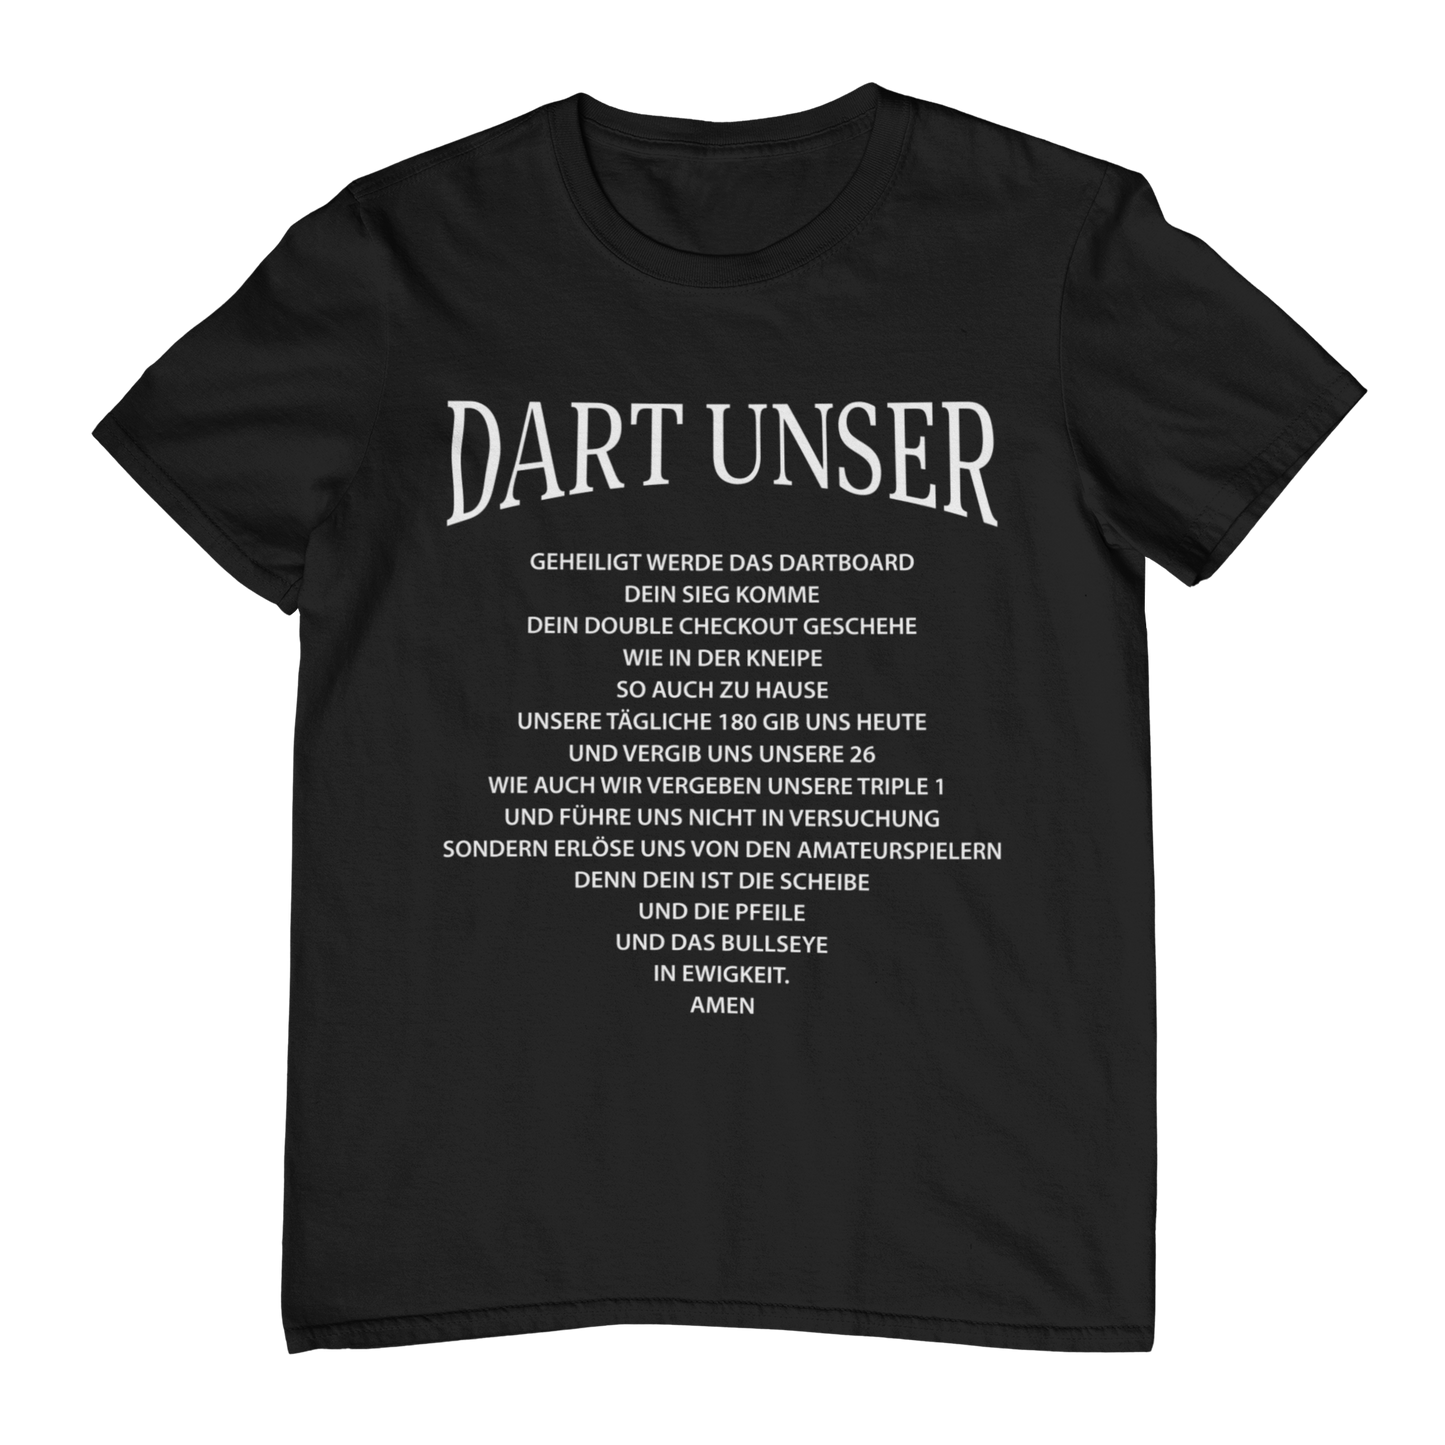 Dart unser - Shirt (Frontprint / Aufdruck vorne)